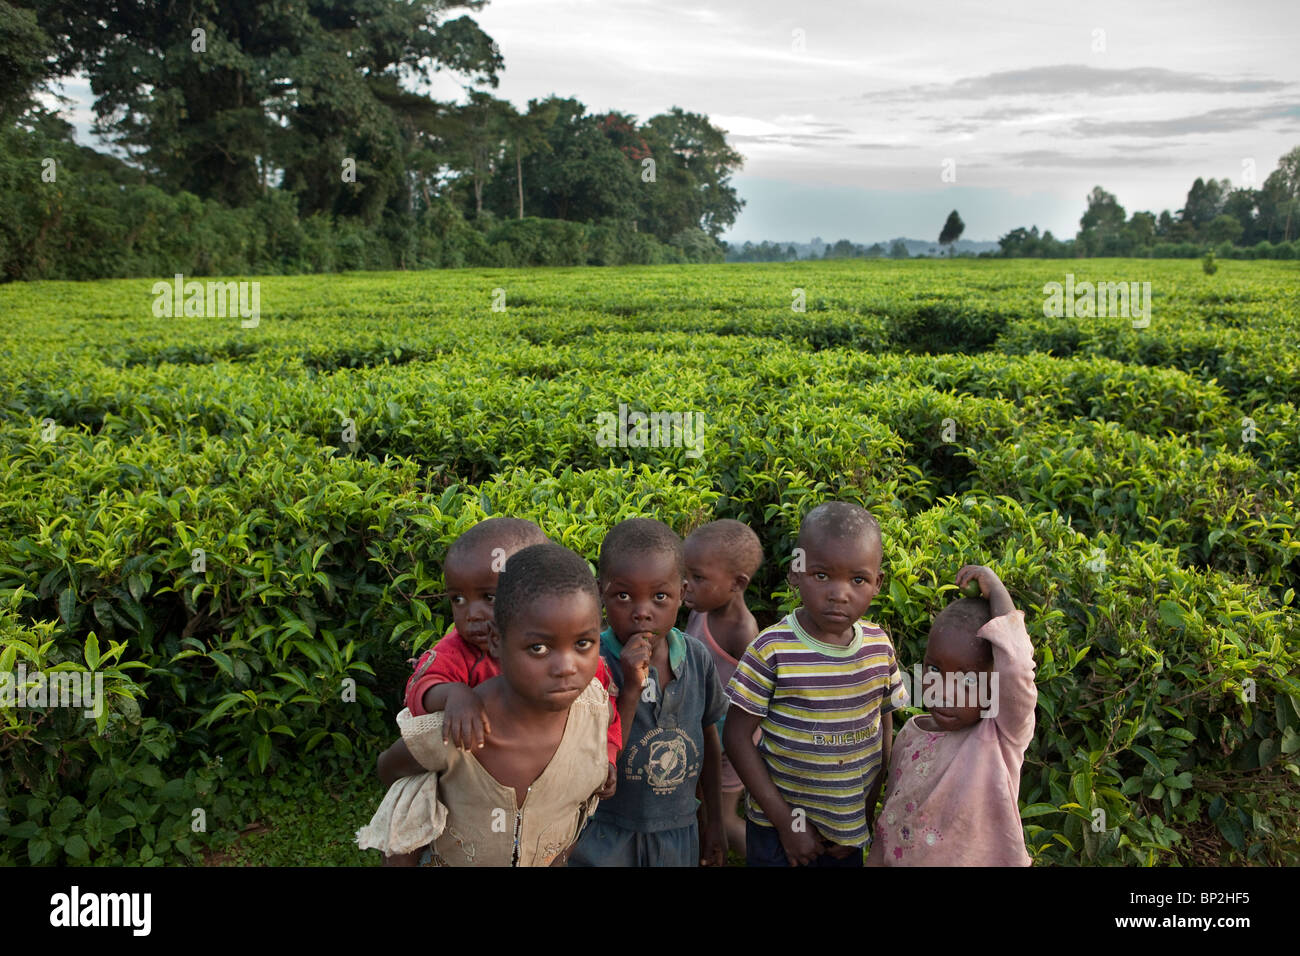 Los niños están a lo largo de campos de té en Kenya occidental, cerca de Kakamega. Foto de stock